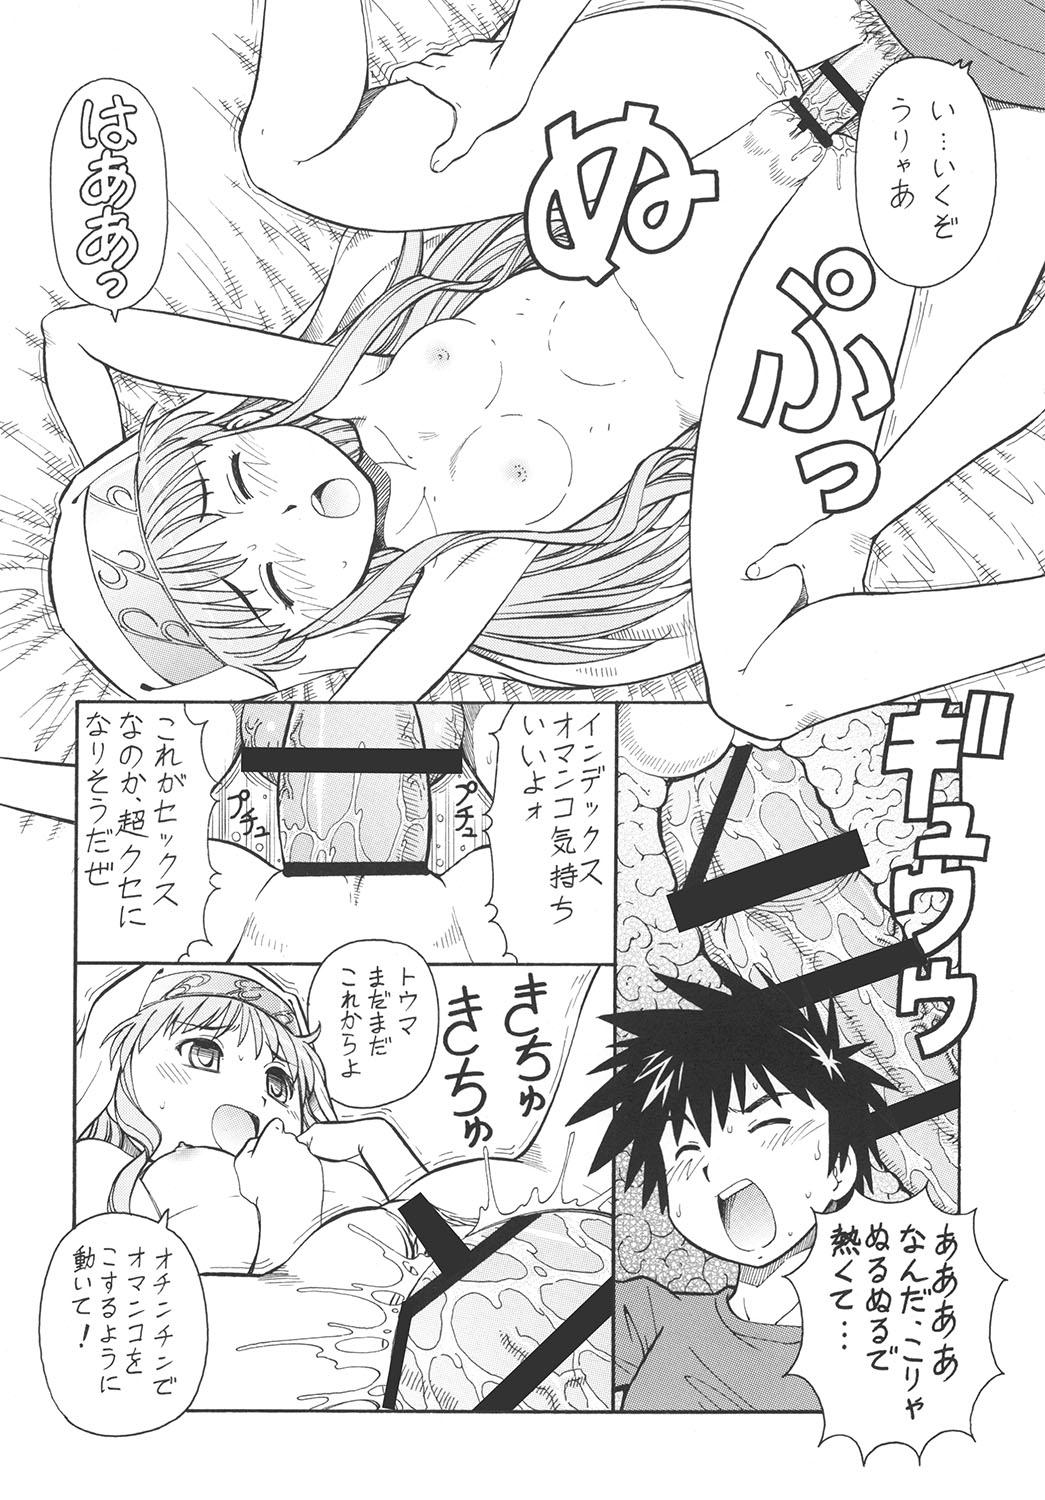 Hardcorend Toaru Omeko ni Railgun - Toaru kagaku no railgun Toaru majutsu no index Longhair - Page 11